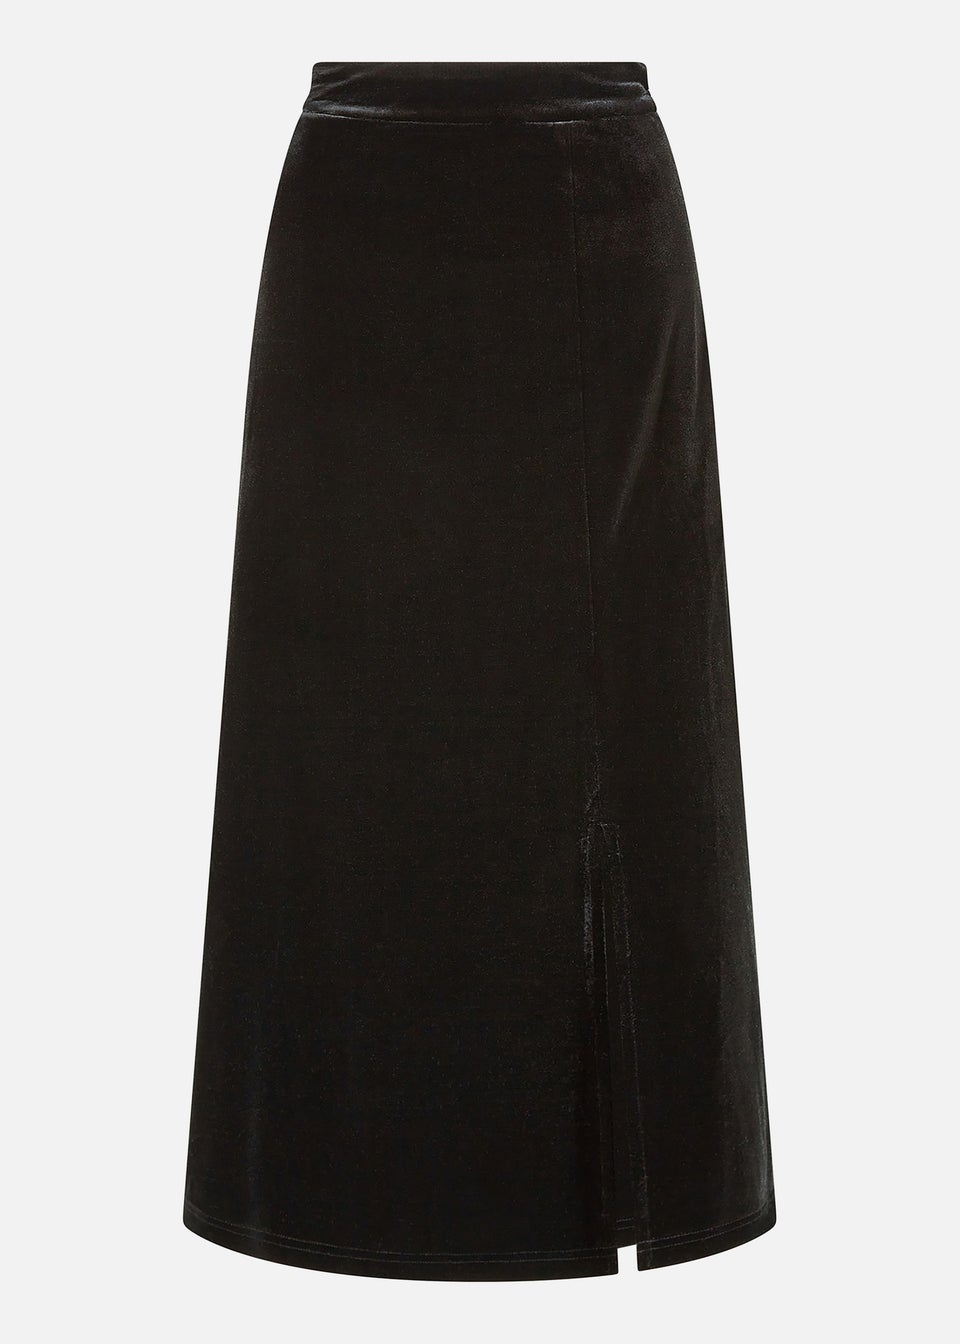 Yumi Black Velvet Skirt With Front Slit - Matalan